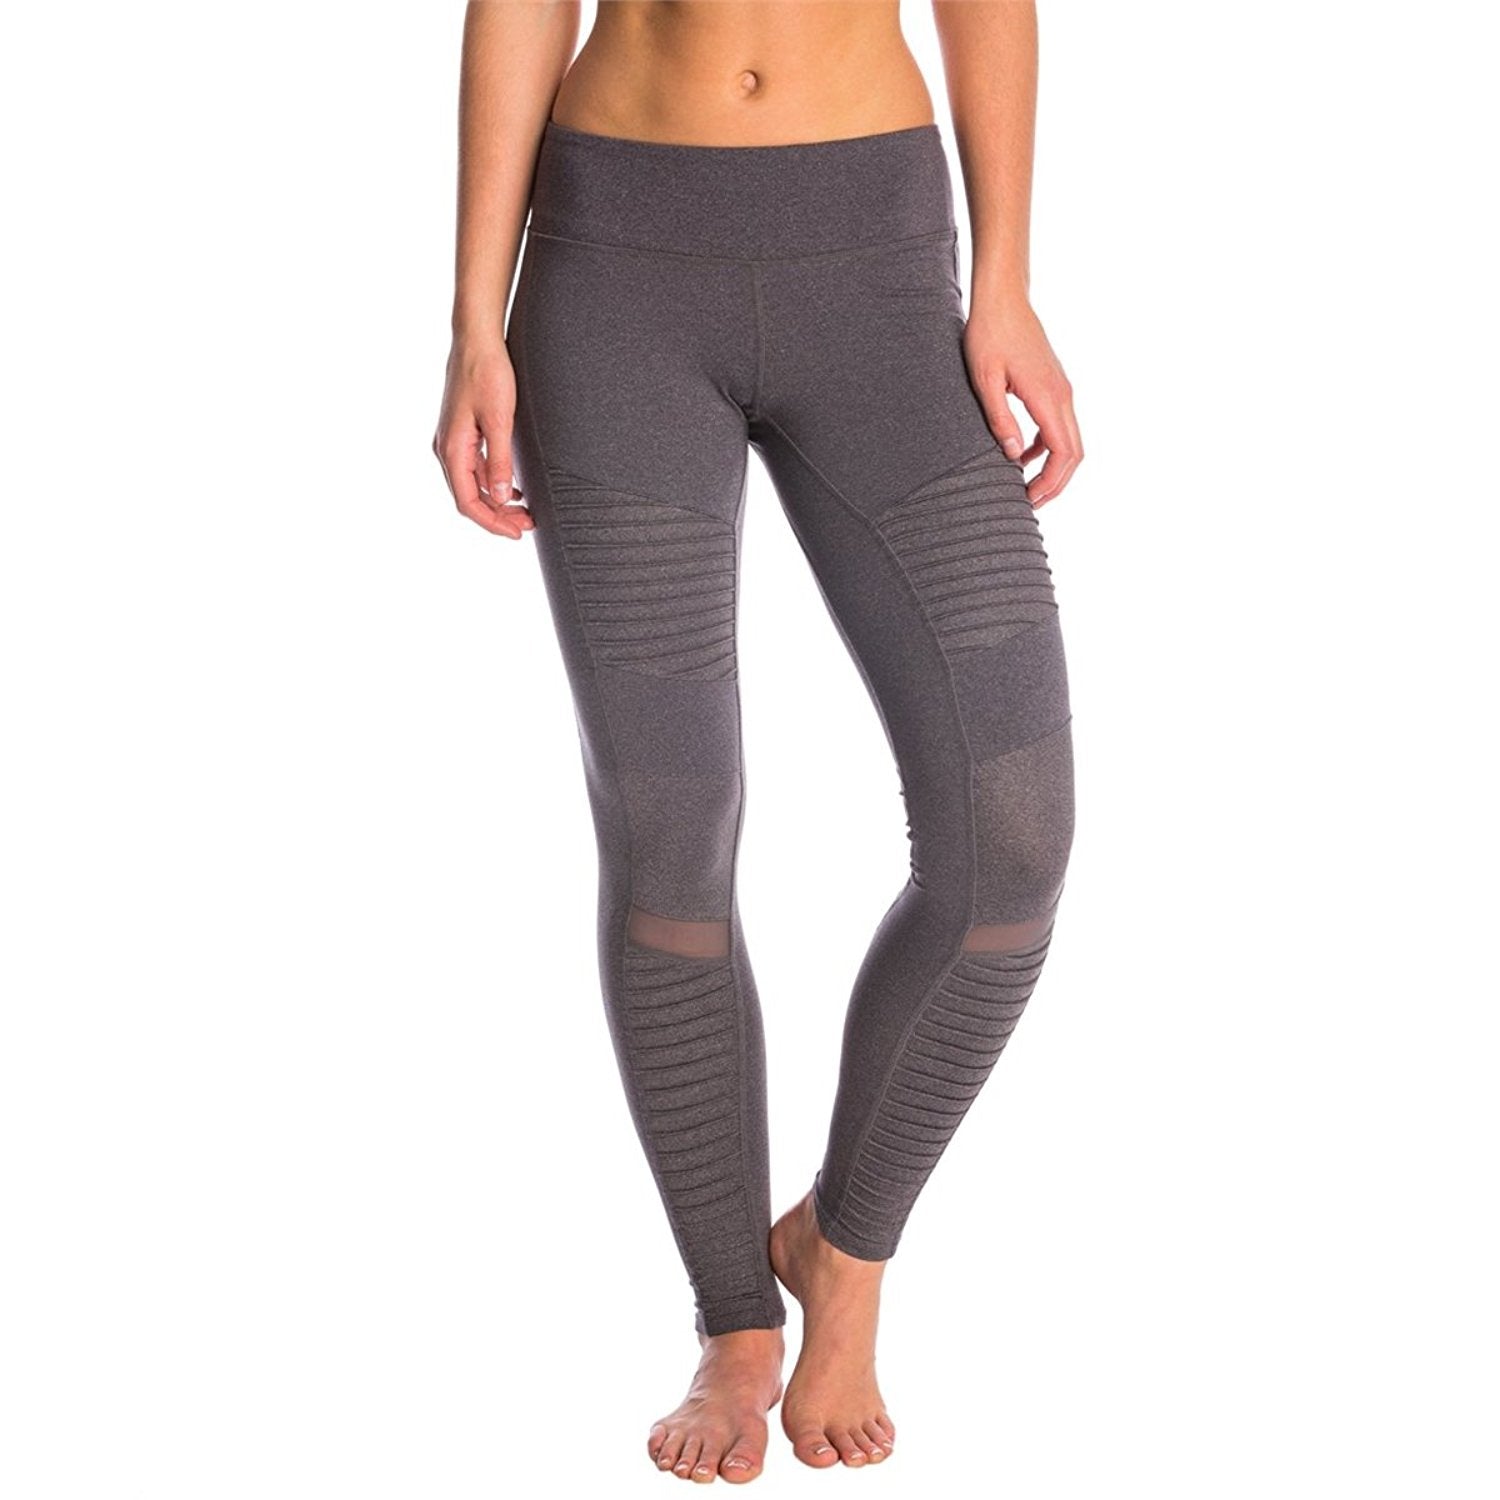 ALO Yoga, Pants & Jumpsuits, Alo Motto Leggings Size Small Purple Dusk  Grey